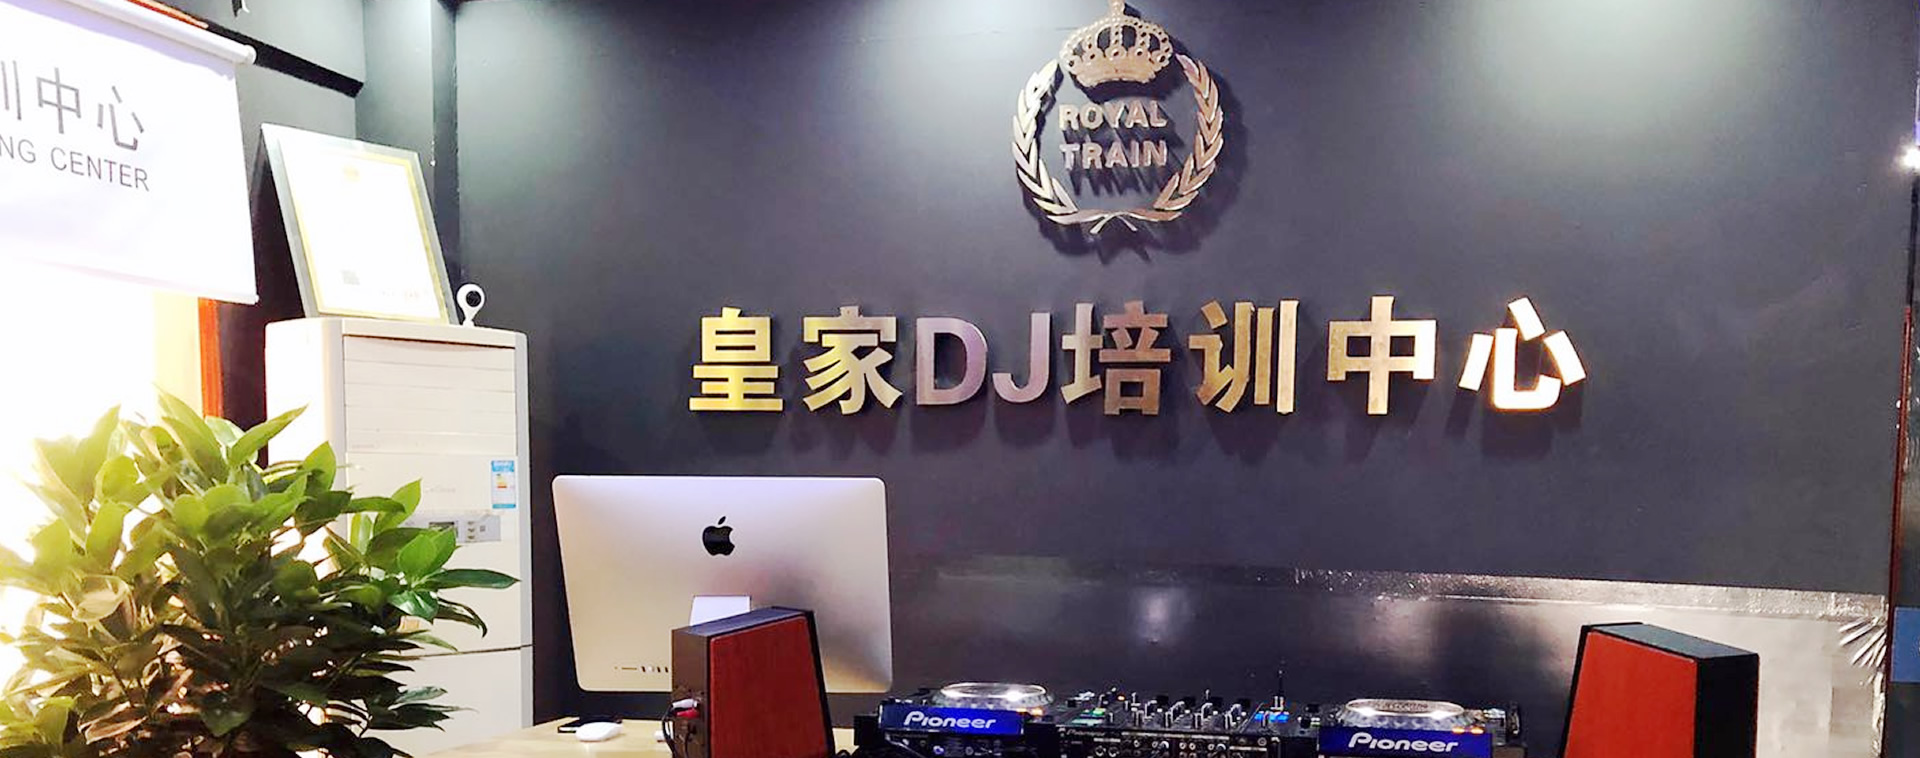 皇家星空DJ培训中心-长沙校区